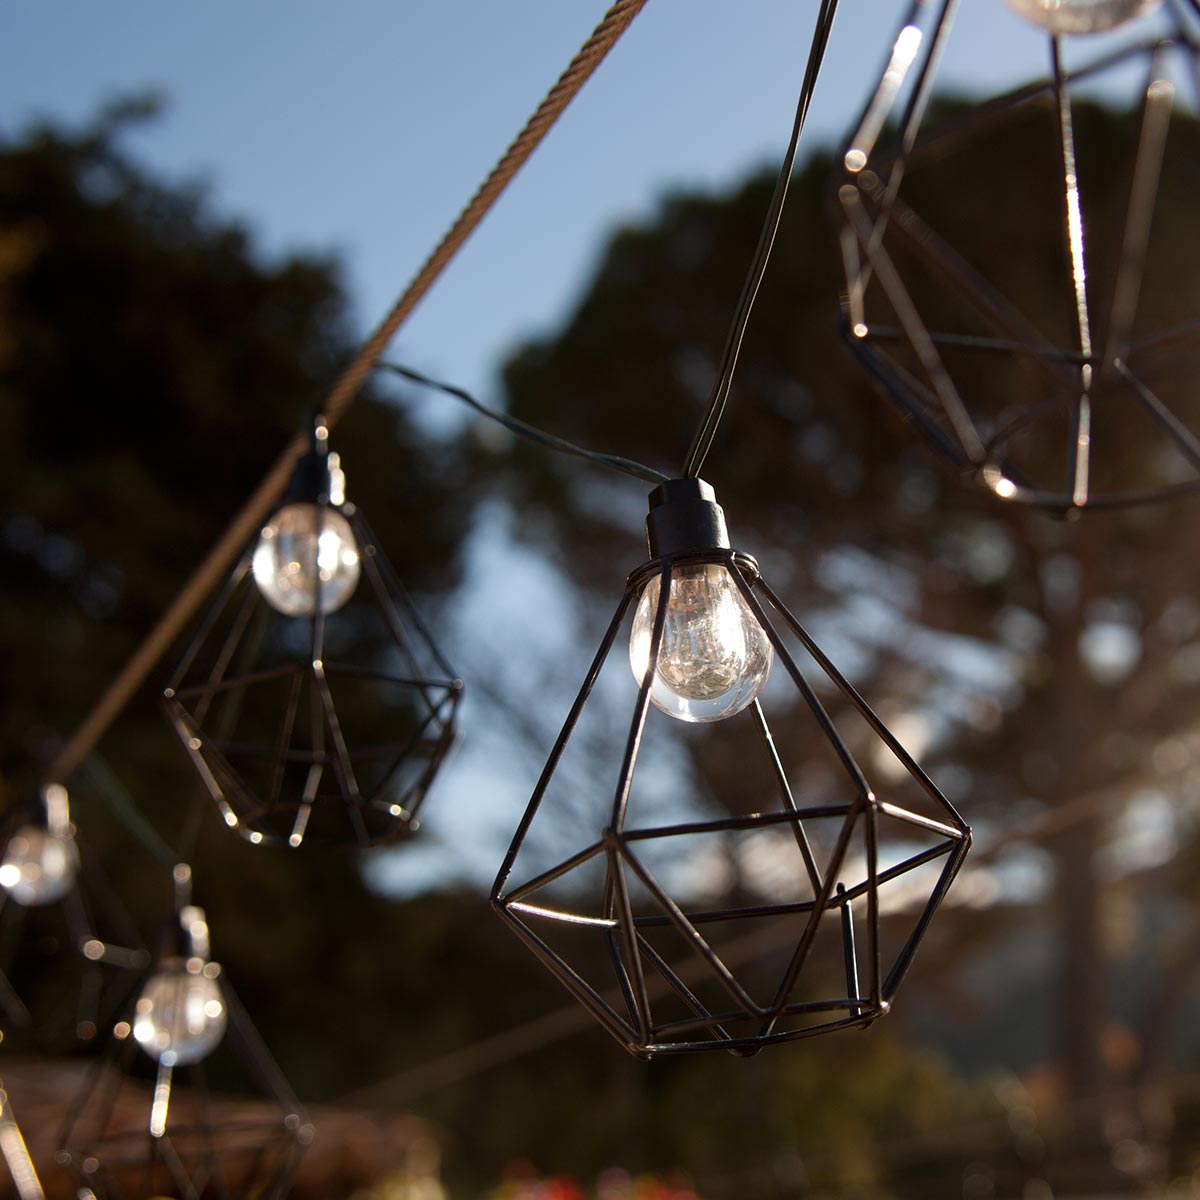 Guirlande lumineuse solaire acier cage diamant 10 ampoules rondes LED blanc chaud MILY 3.90m - REDDECO.com